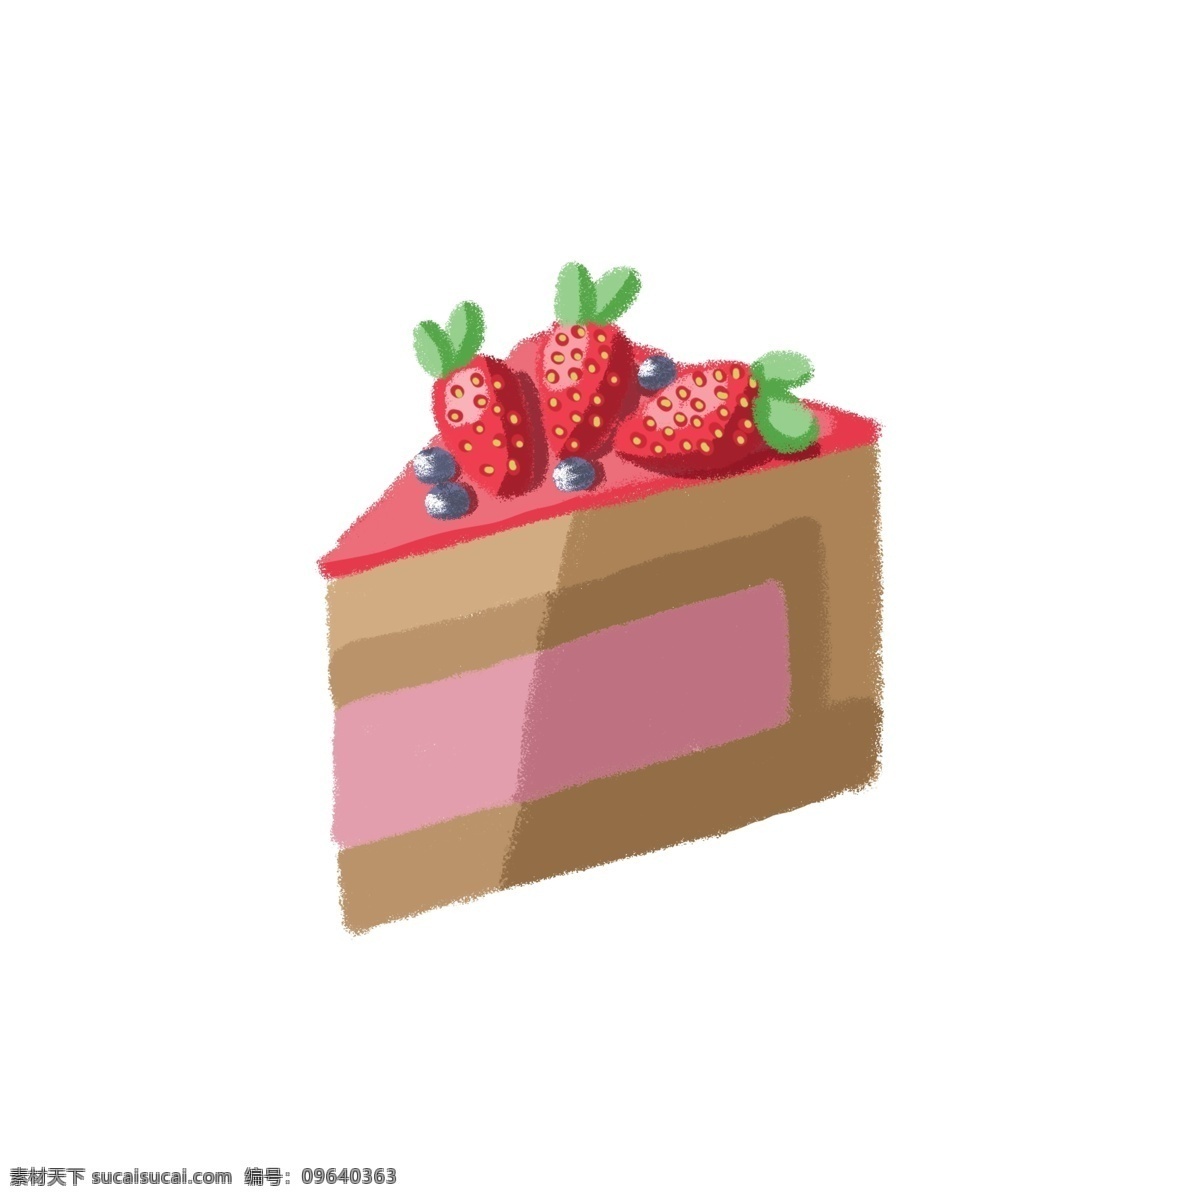 草莓 夹心 蛋糕 夹心蛋糕 绿叶 蓝莓 甜点 甜食 甜品 甜的 美味 可口 好吃 三角形蛋糕